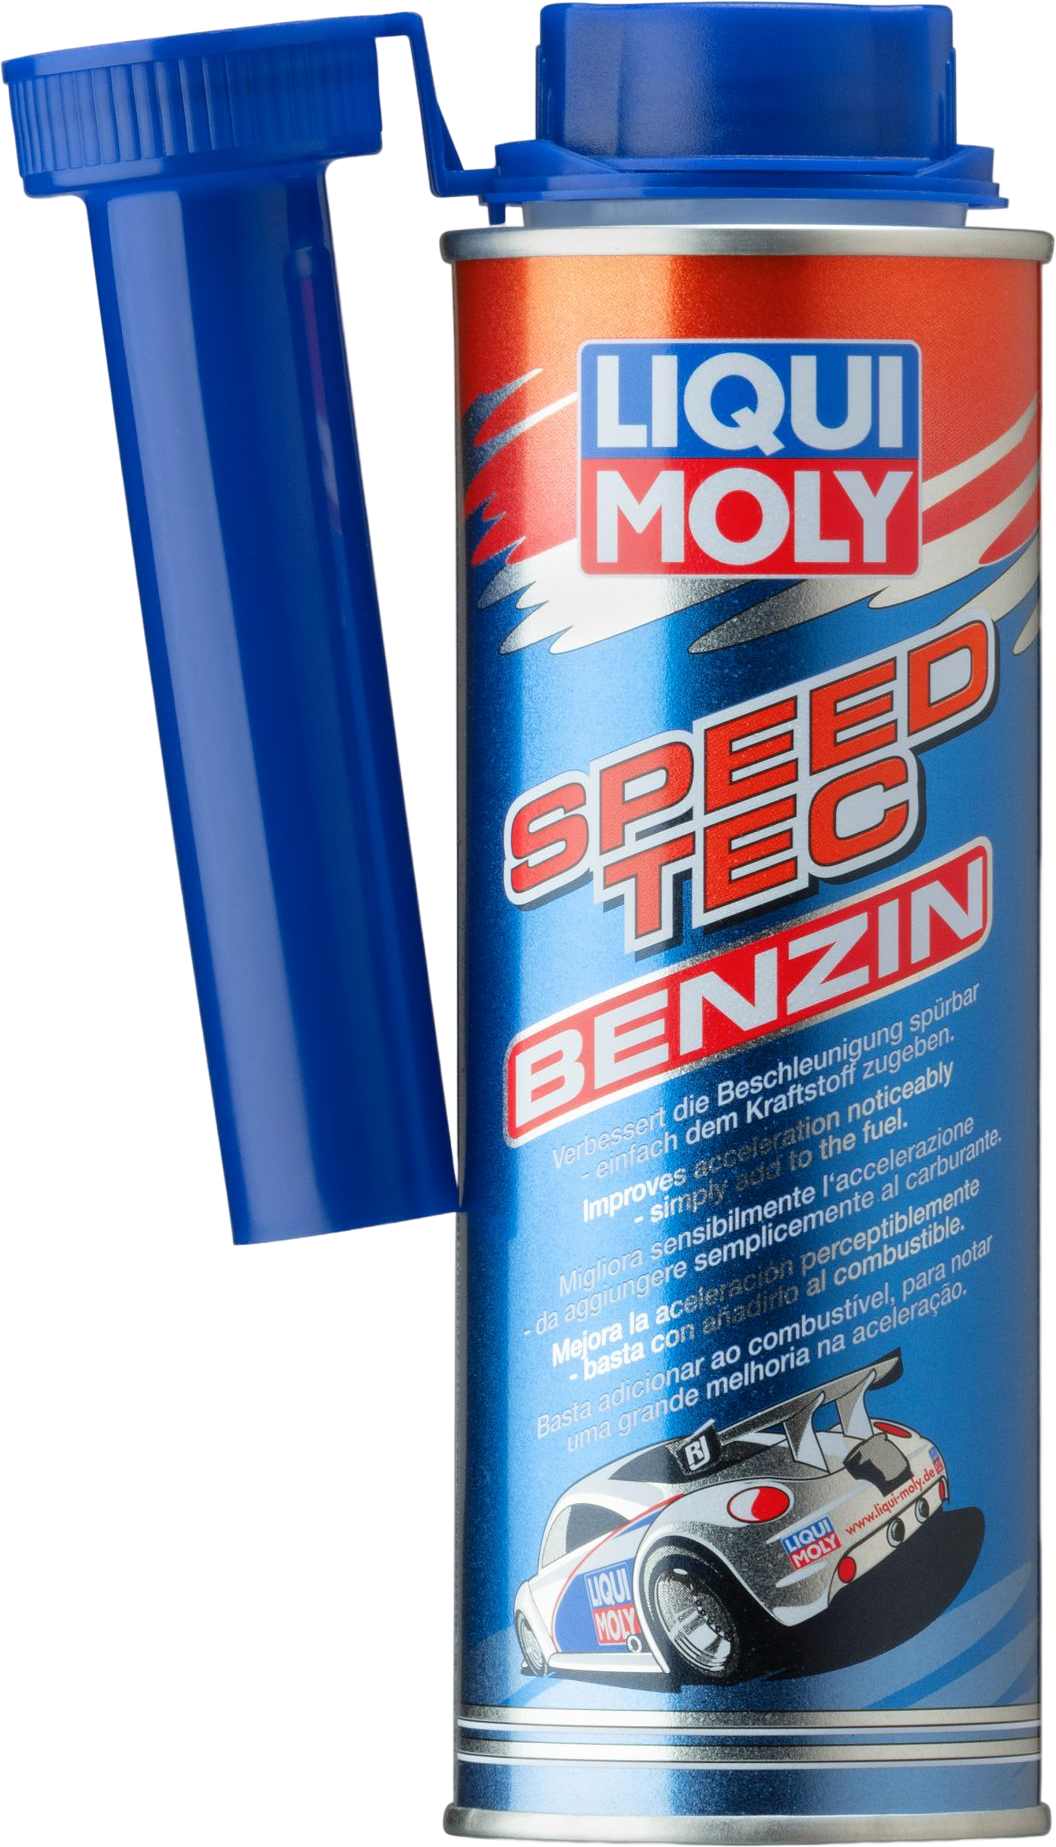 Liqui Moly Speed Tec Benzine, 250 ml